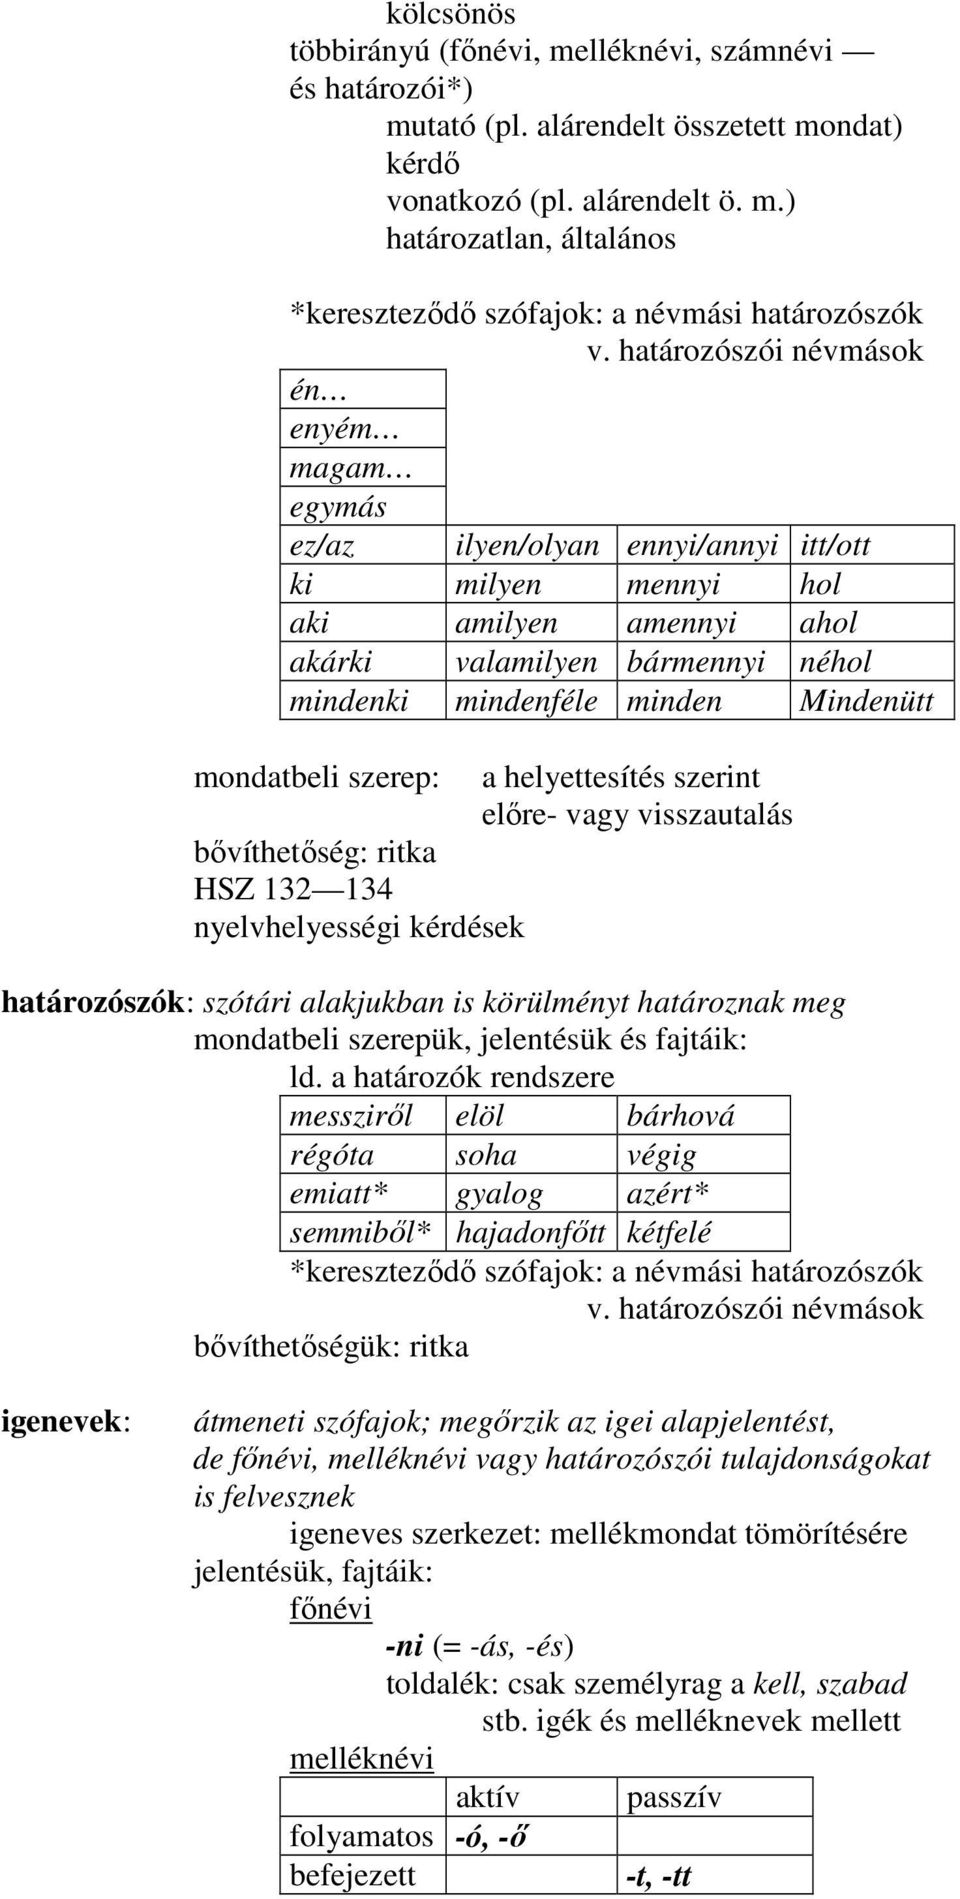 mondatbeli szerep: a helyettesítés szerint elıre- vagy visszautalás bıvíthetıség: ritka HSZ 132 134 nyelvhelyességi kérdések határozószók: szótári alakjukban is körülményt határoznak meg mondatbeli